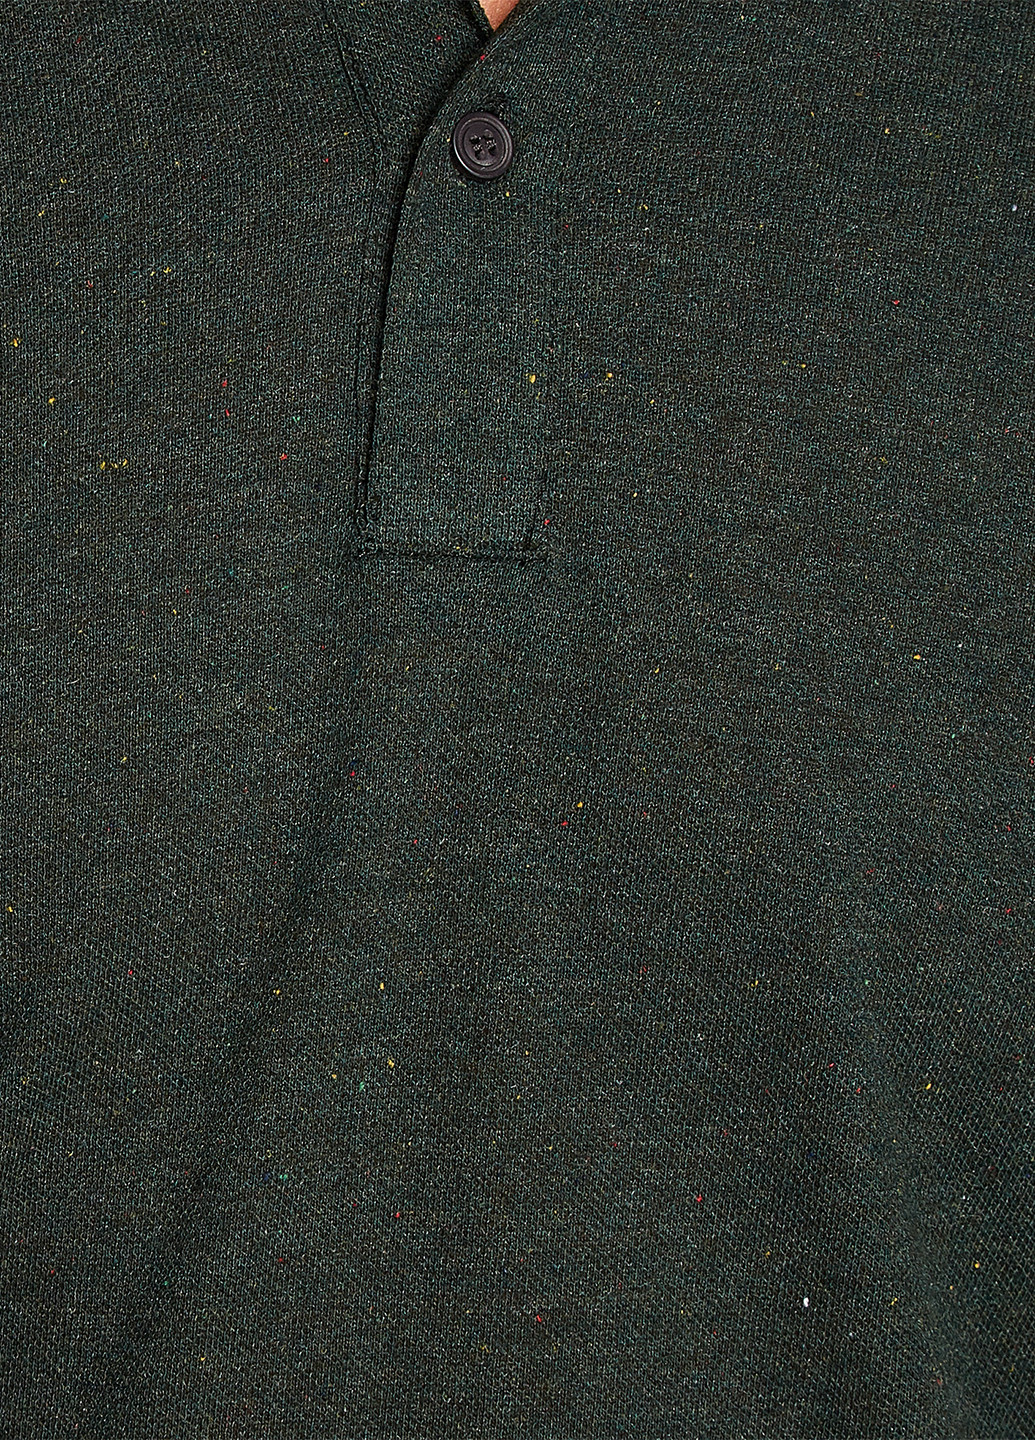 Оливковая (хаки) футболка-поло для мужчин KOTON меланжевая